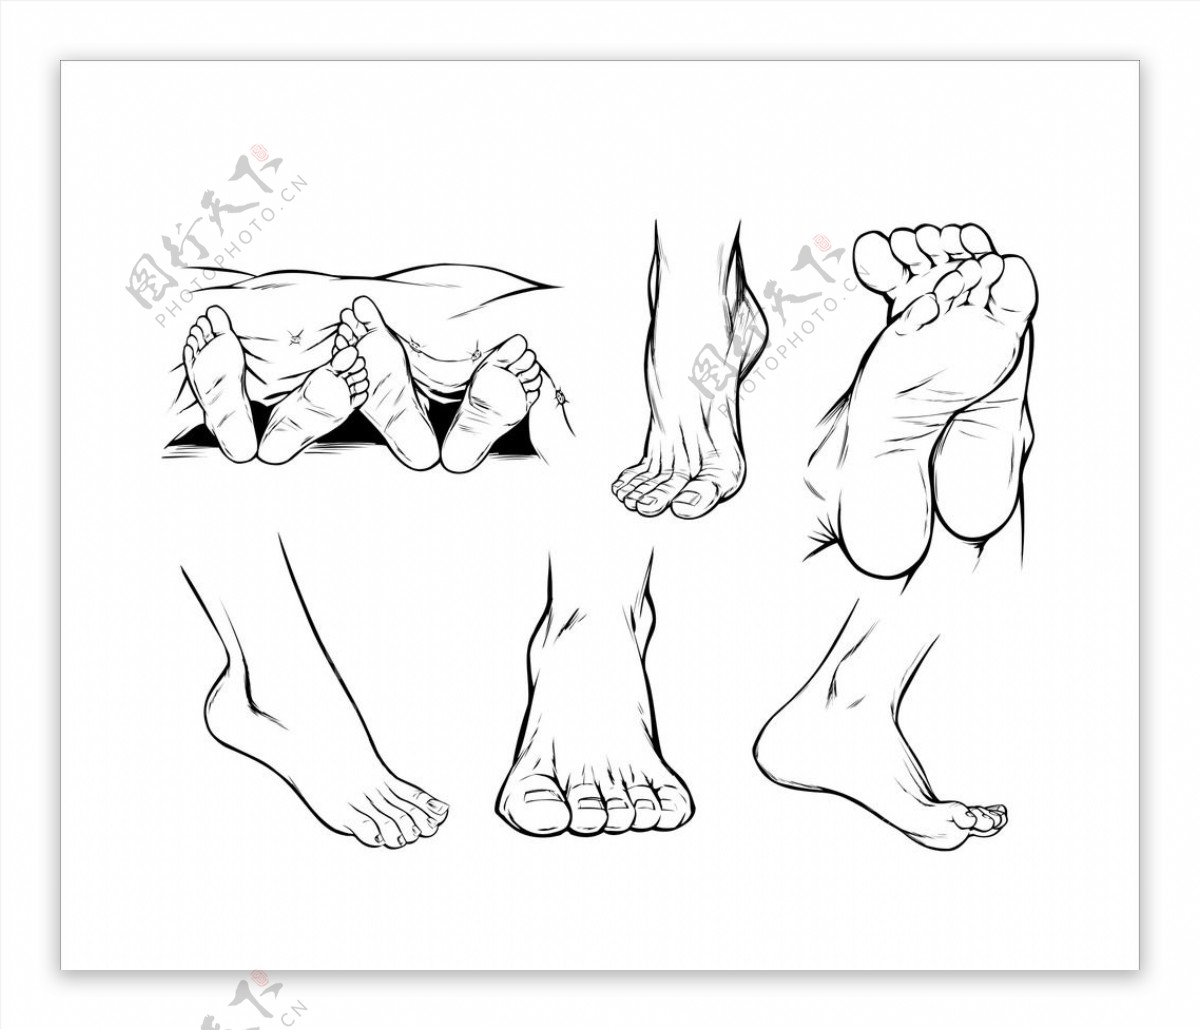 人体脚部素描